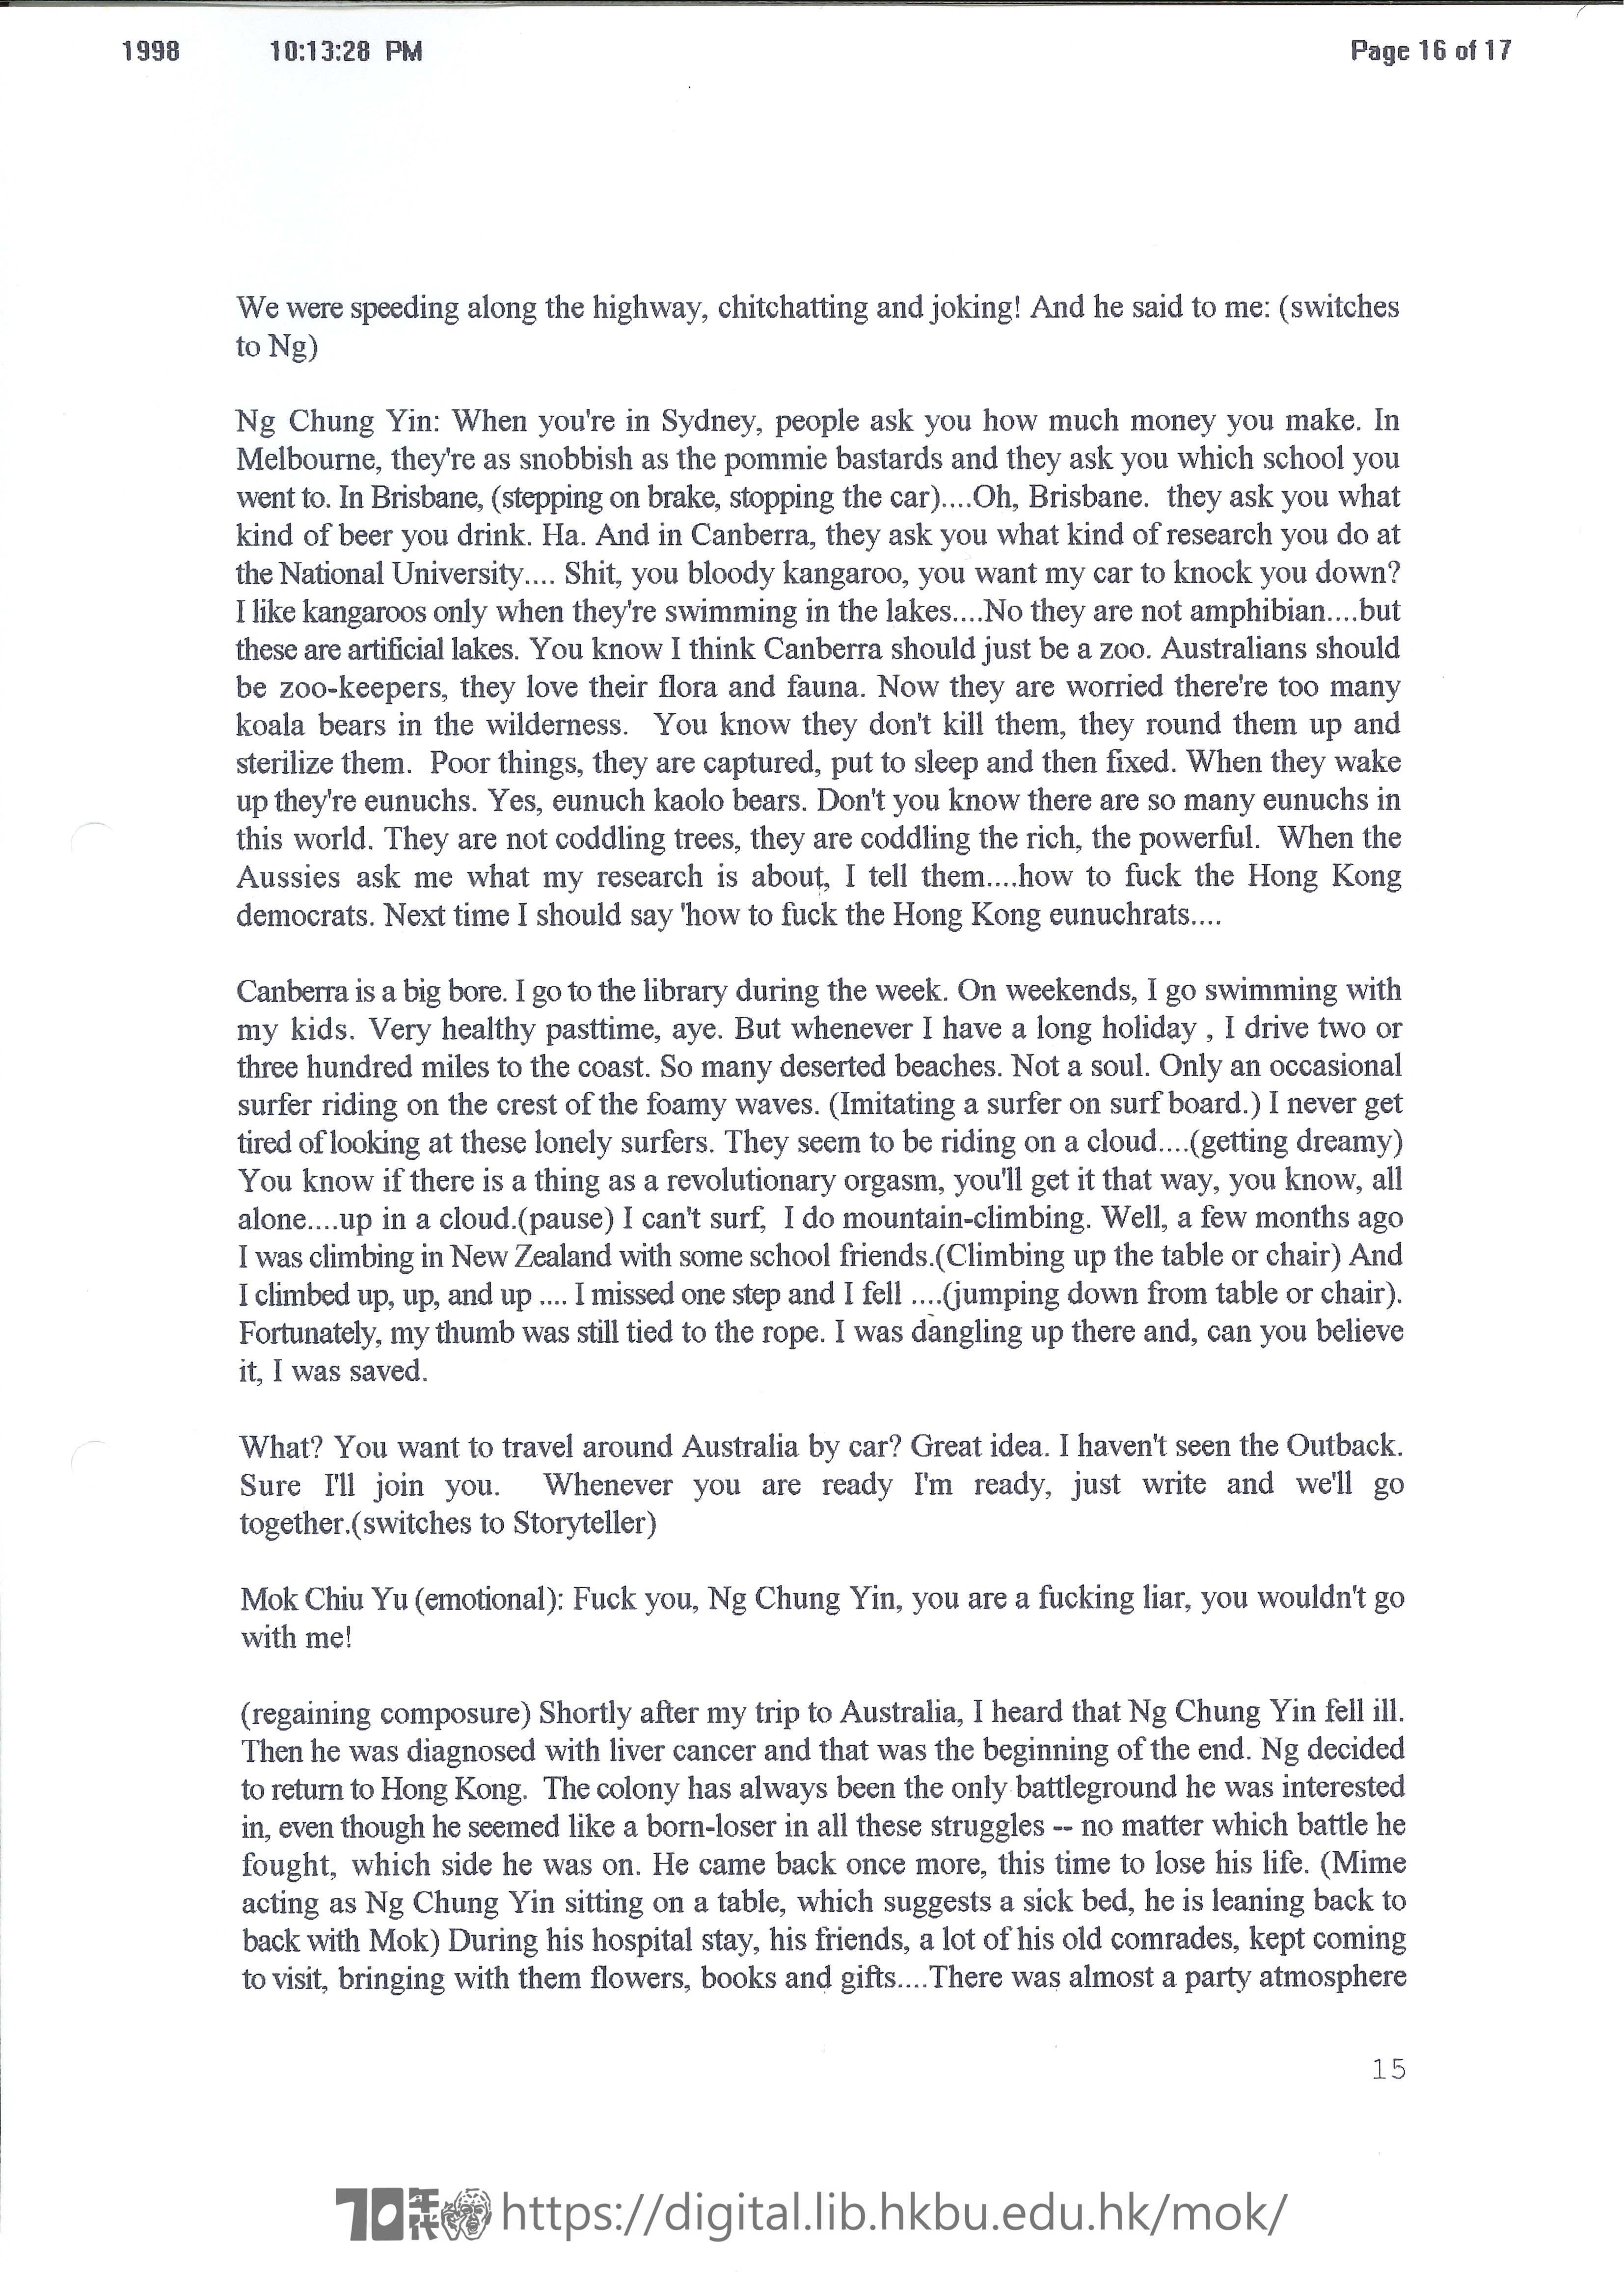 吳仲賢的故事  香港三世書之《吳仲賢的故事》宣傳品  